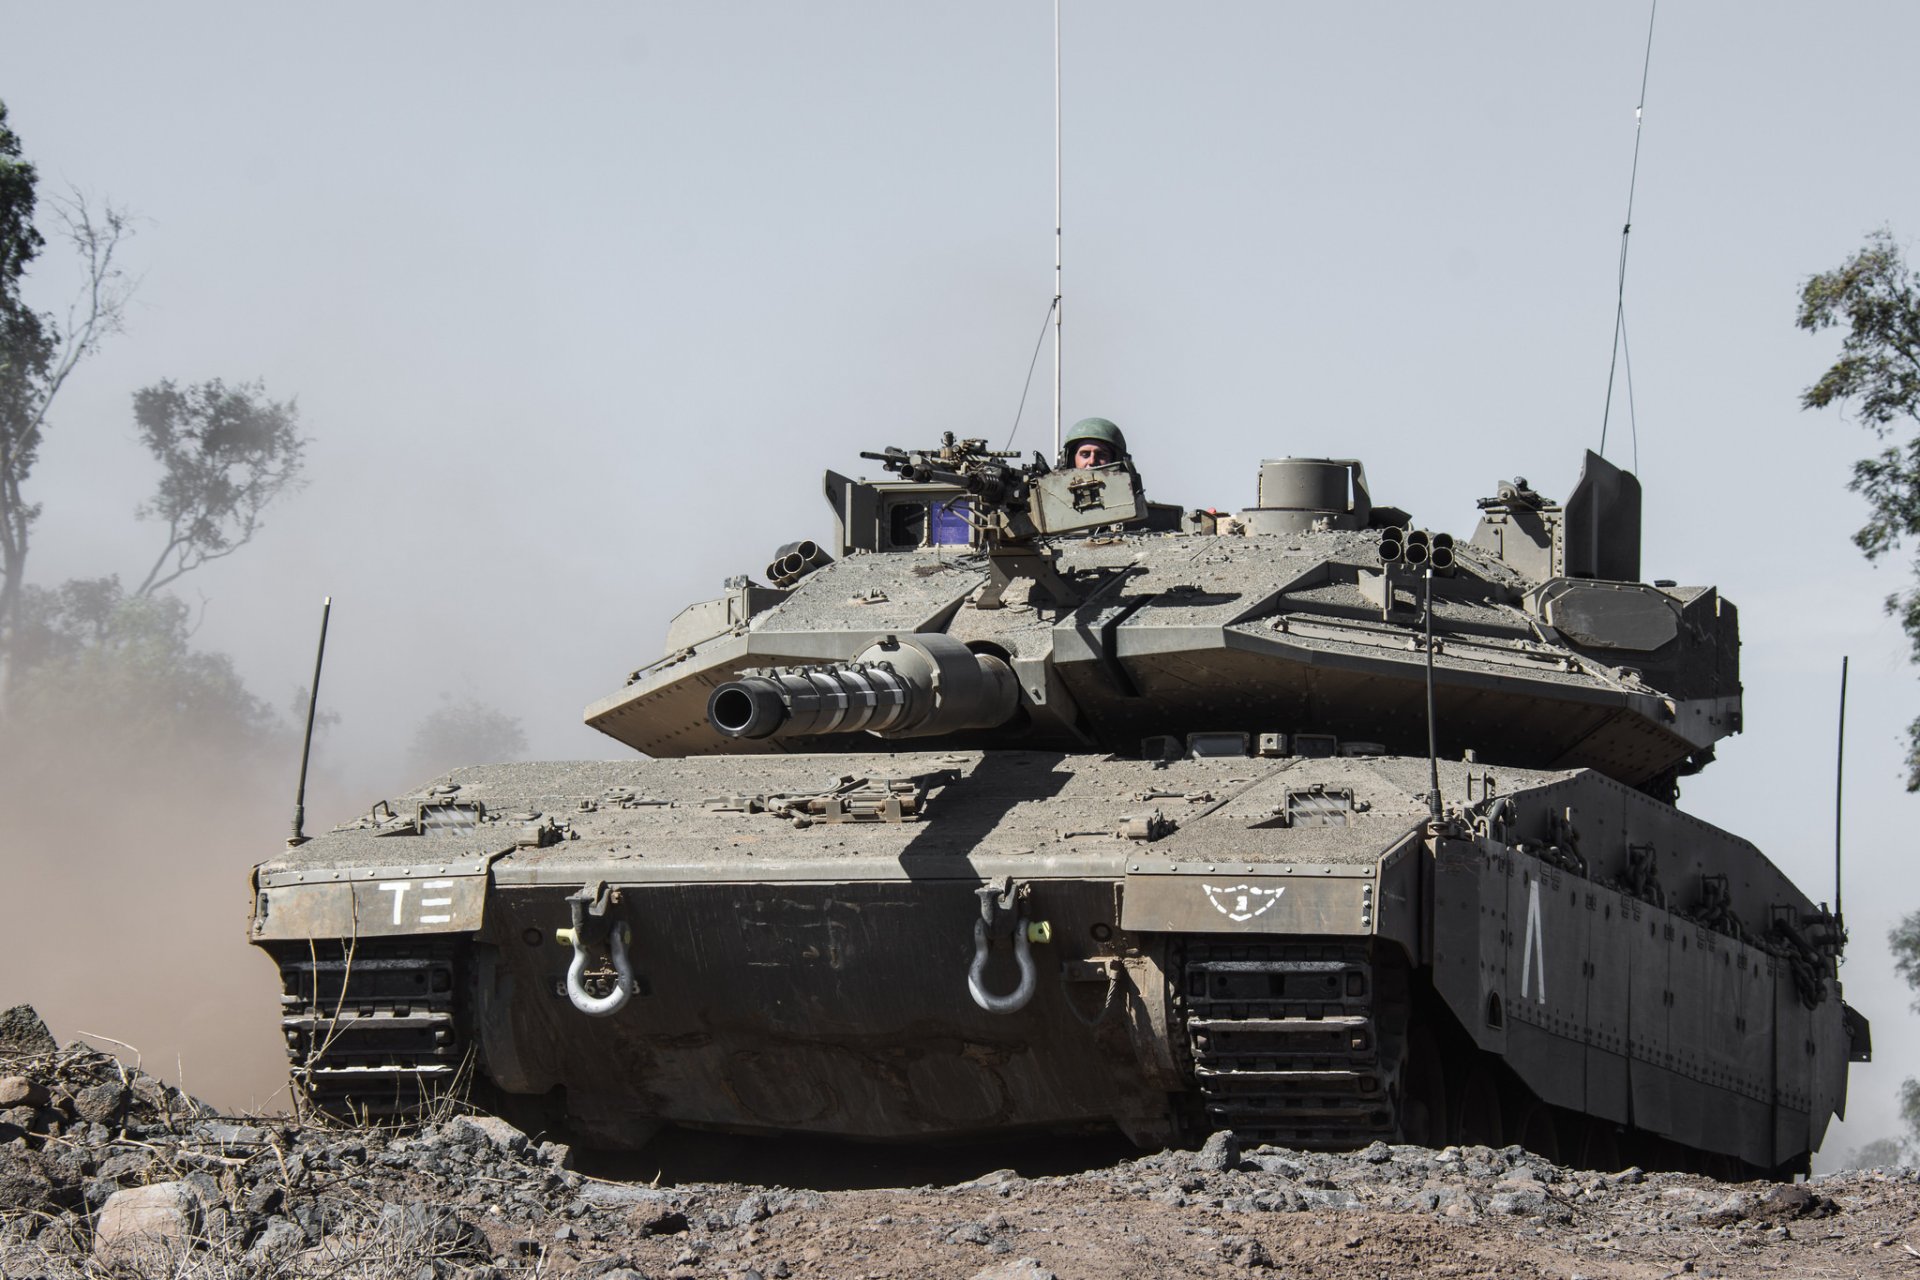 меркава iv «меркава» основной боевой танк израиля